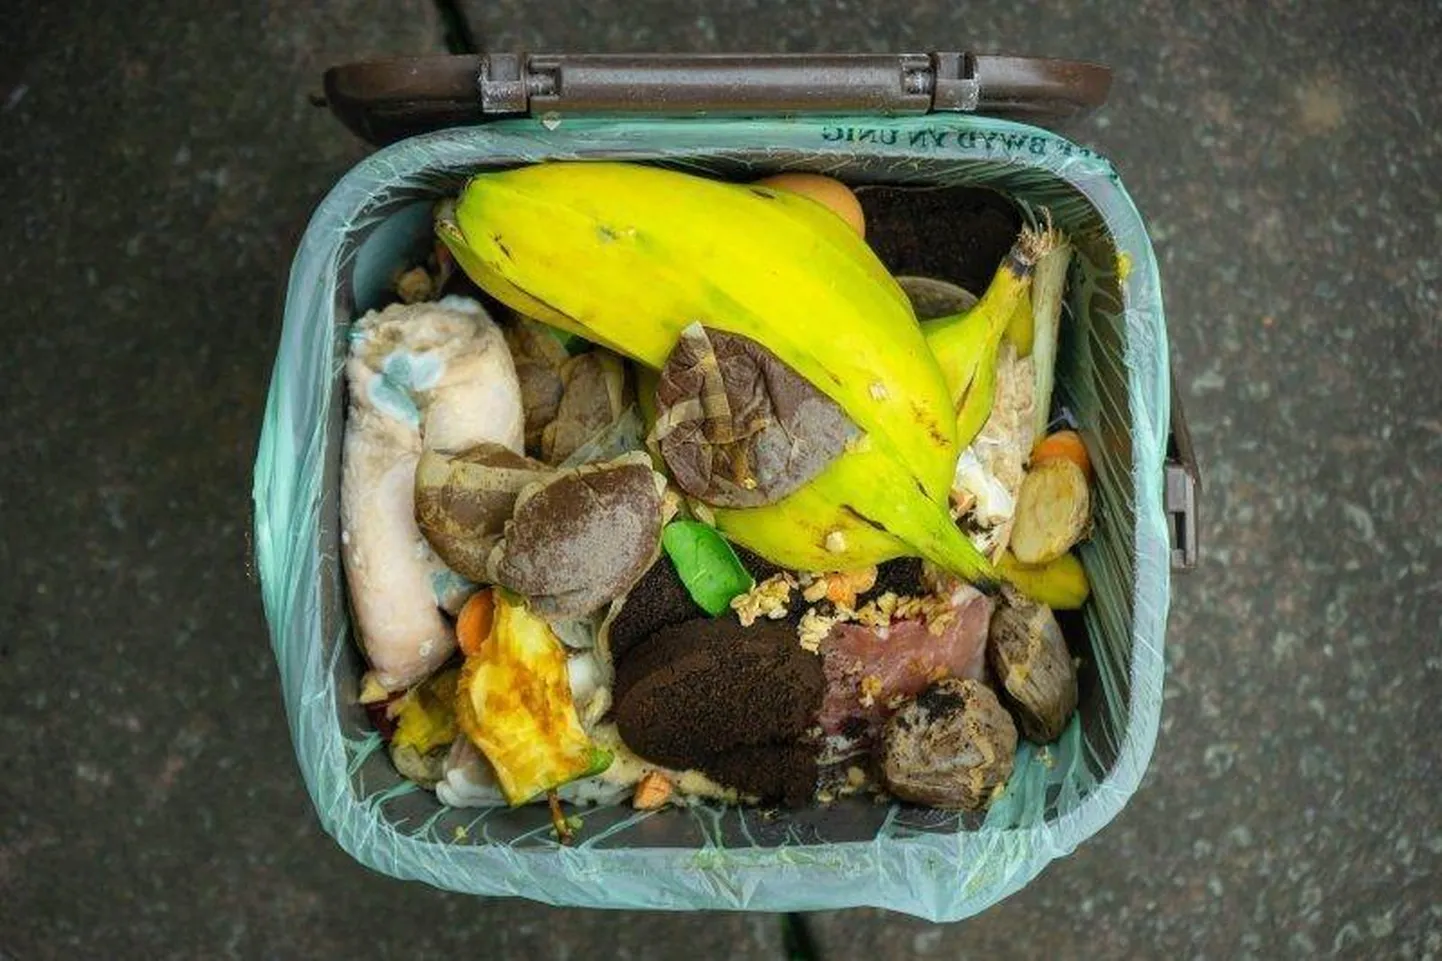 Чтобы извлечь пользу из сортировки биоотходов, их следует высыпать в контейнер целиком, а полиэтиленовый пакет выбрасывать в контейнер для бытовых отходов.